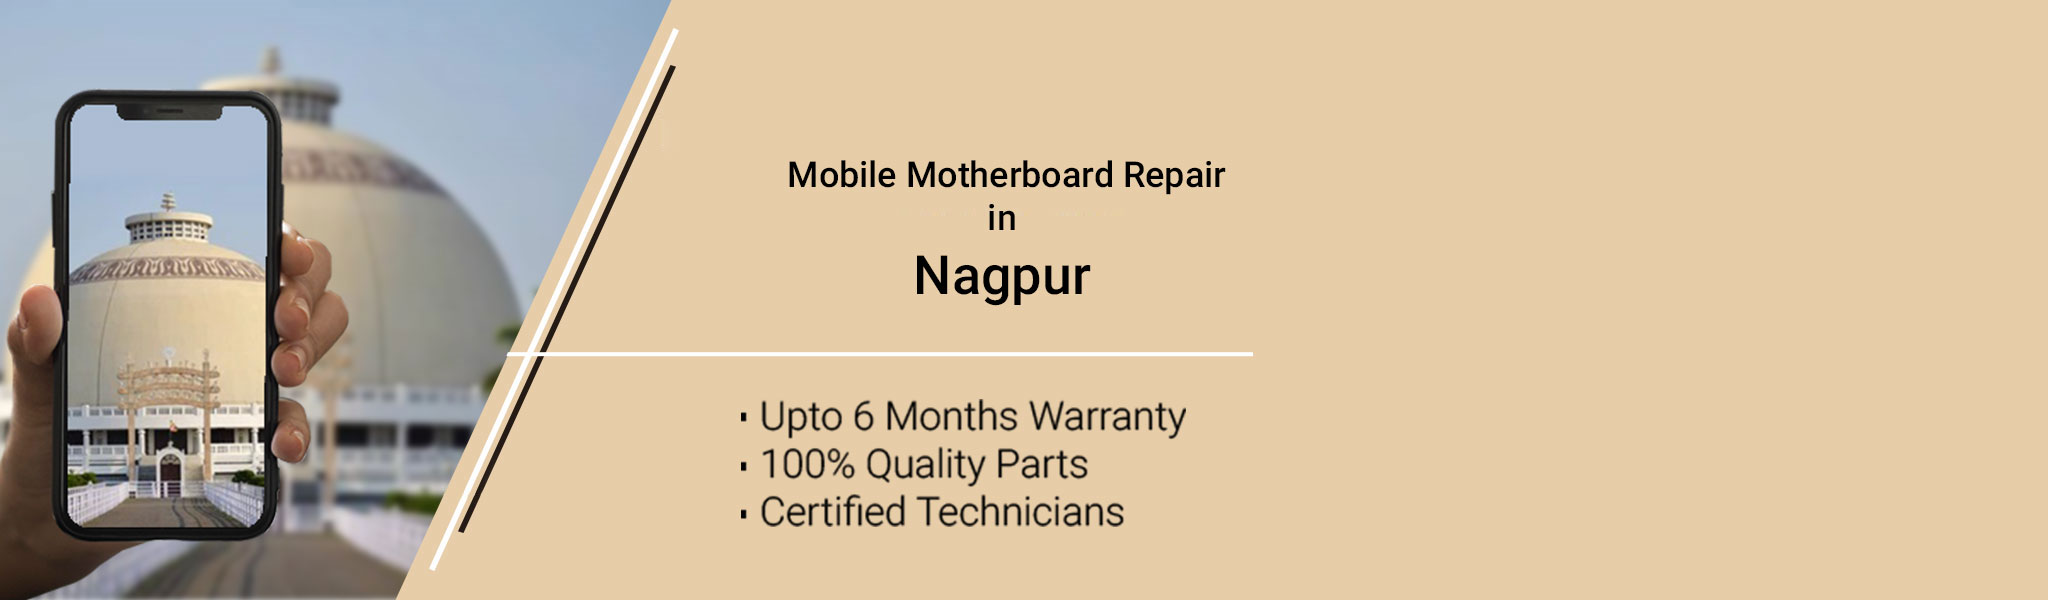 Nagpur_Motherboard.jpg